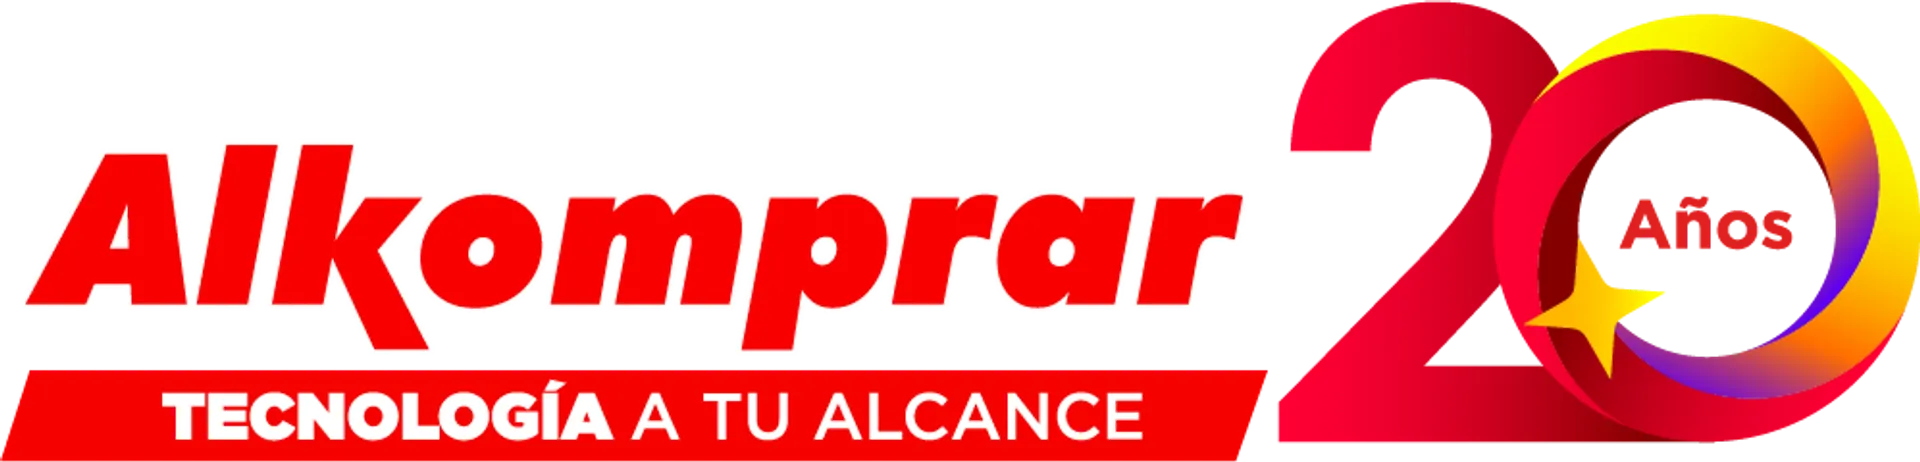 ALKOMPRAR logo